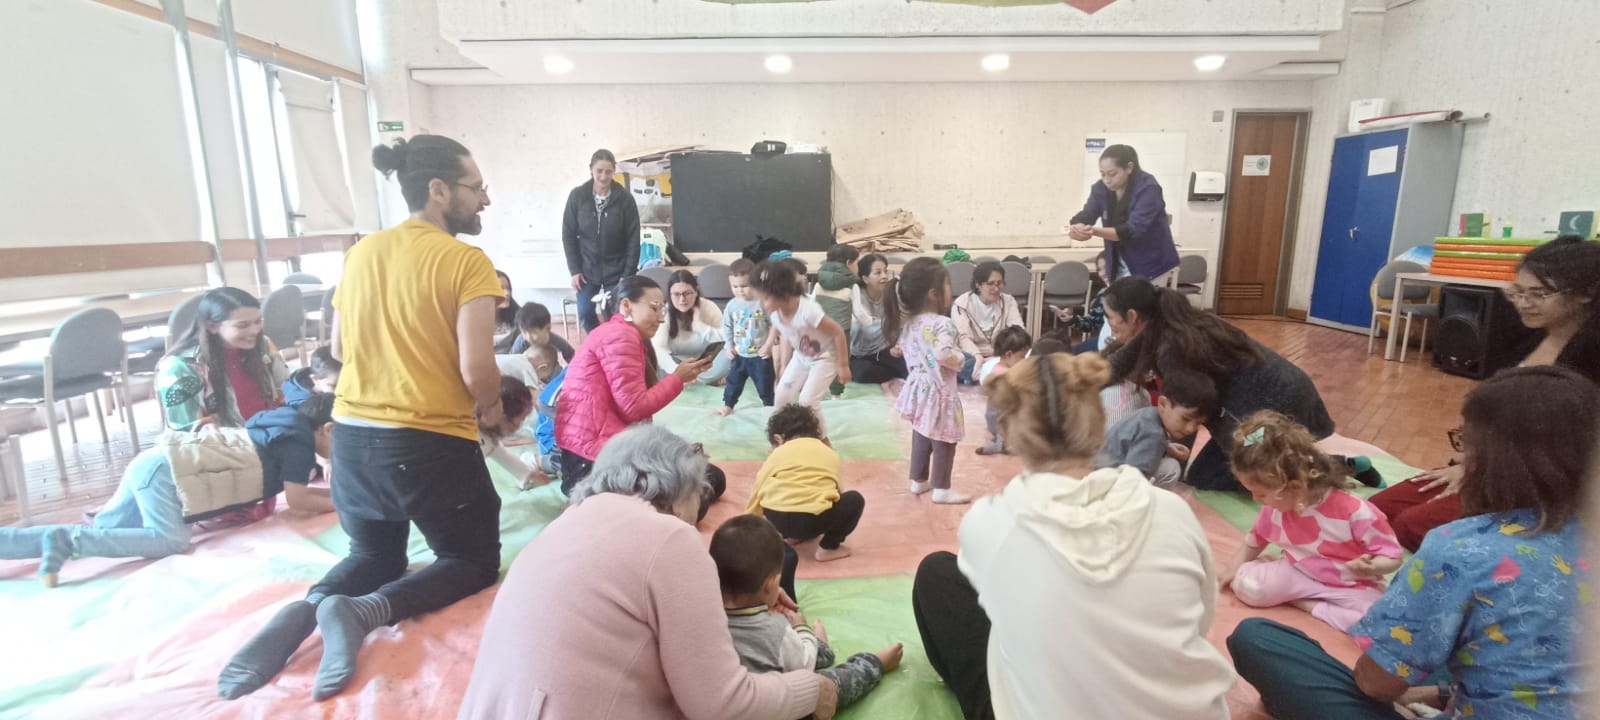 Adultos y niños participando de actividades en la biblioteca